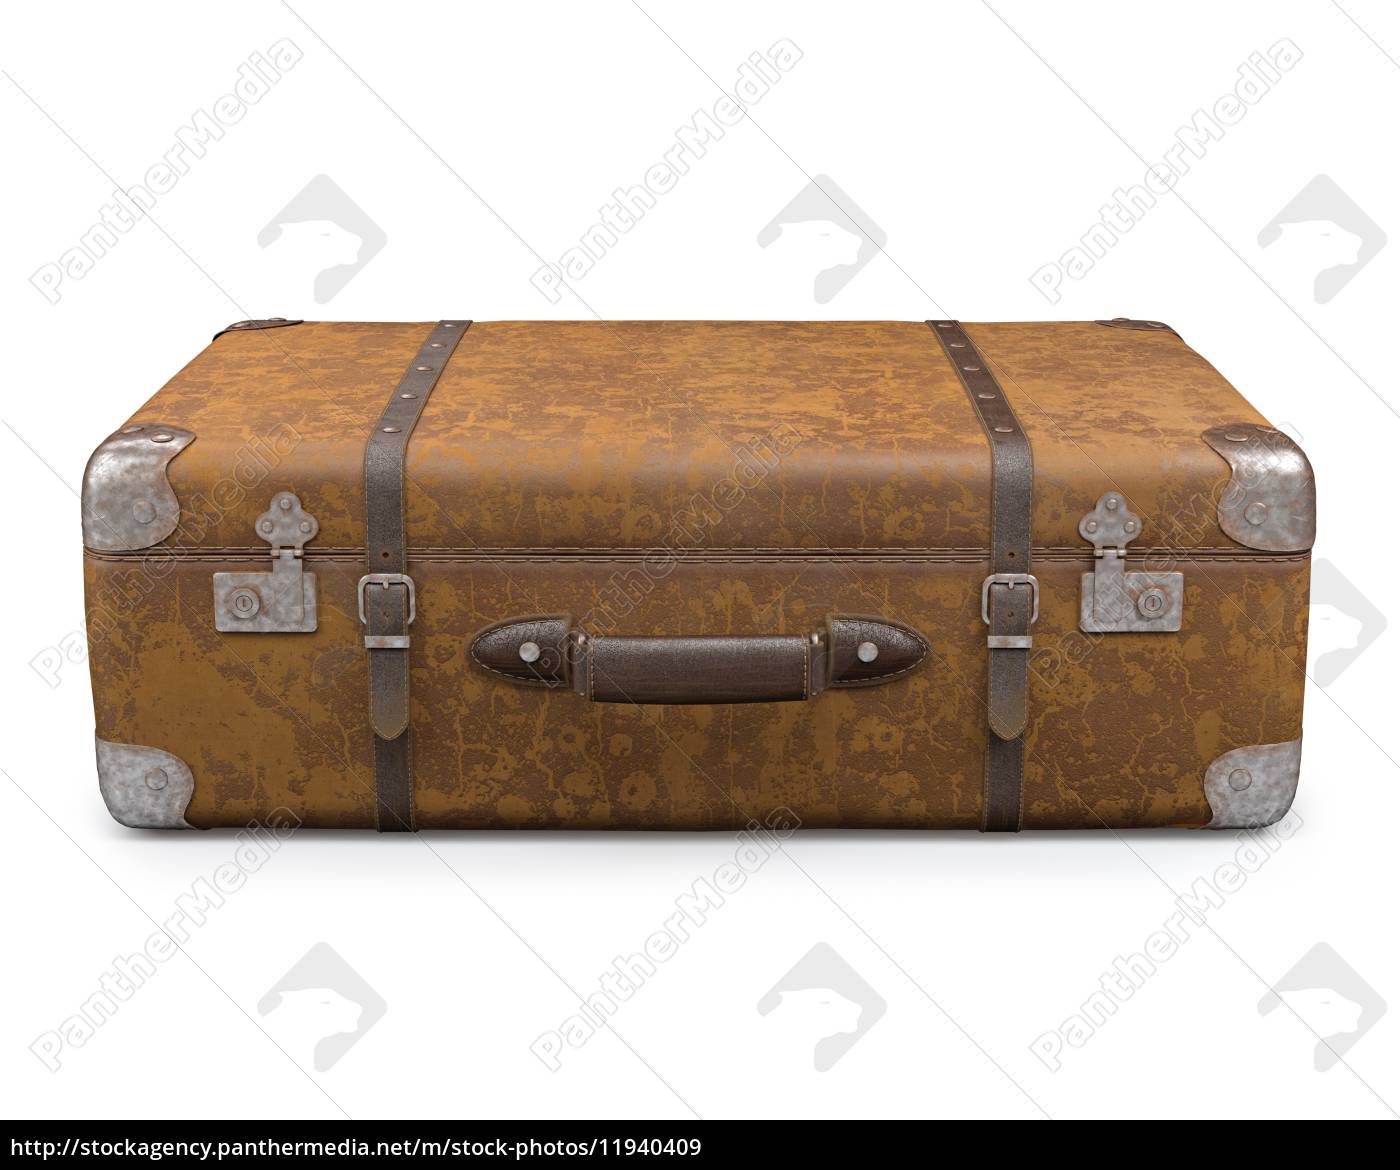 Gammel kuffert hvid - Royalty Free #11940409 | PantherMedia Billedbureau